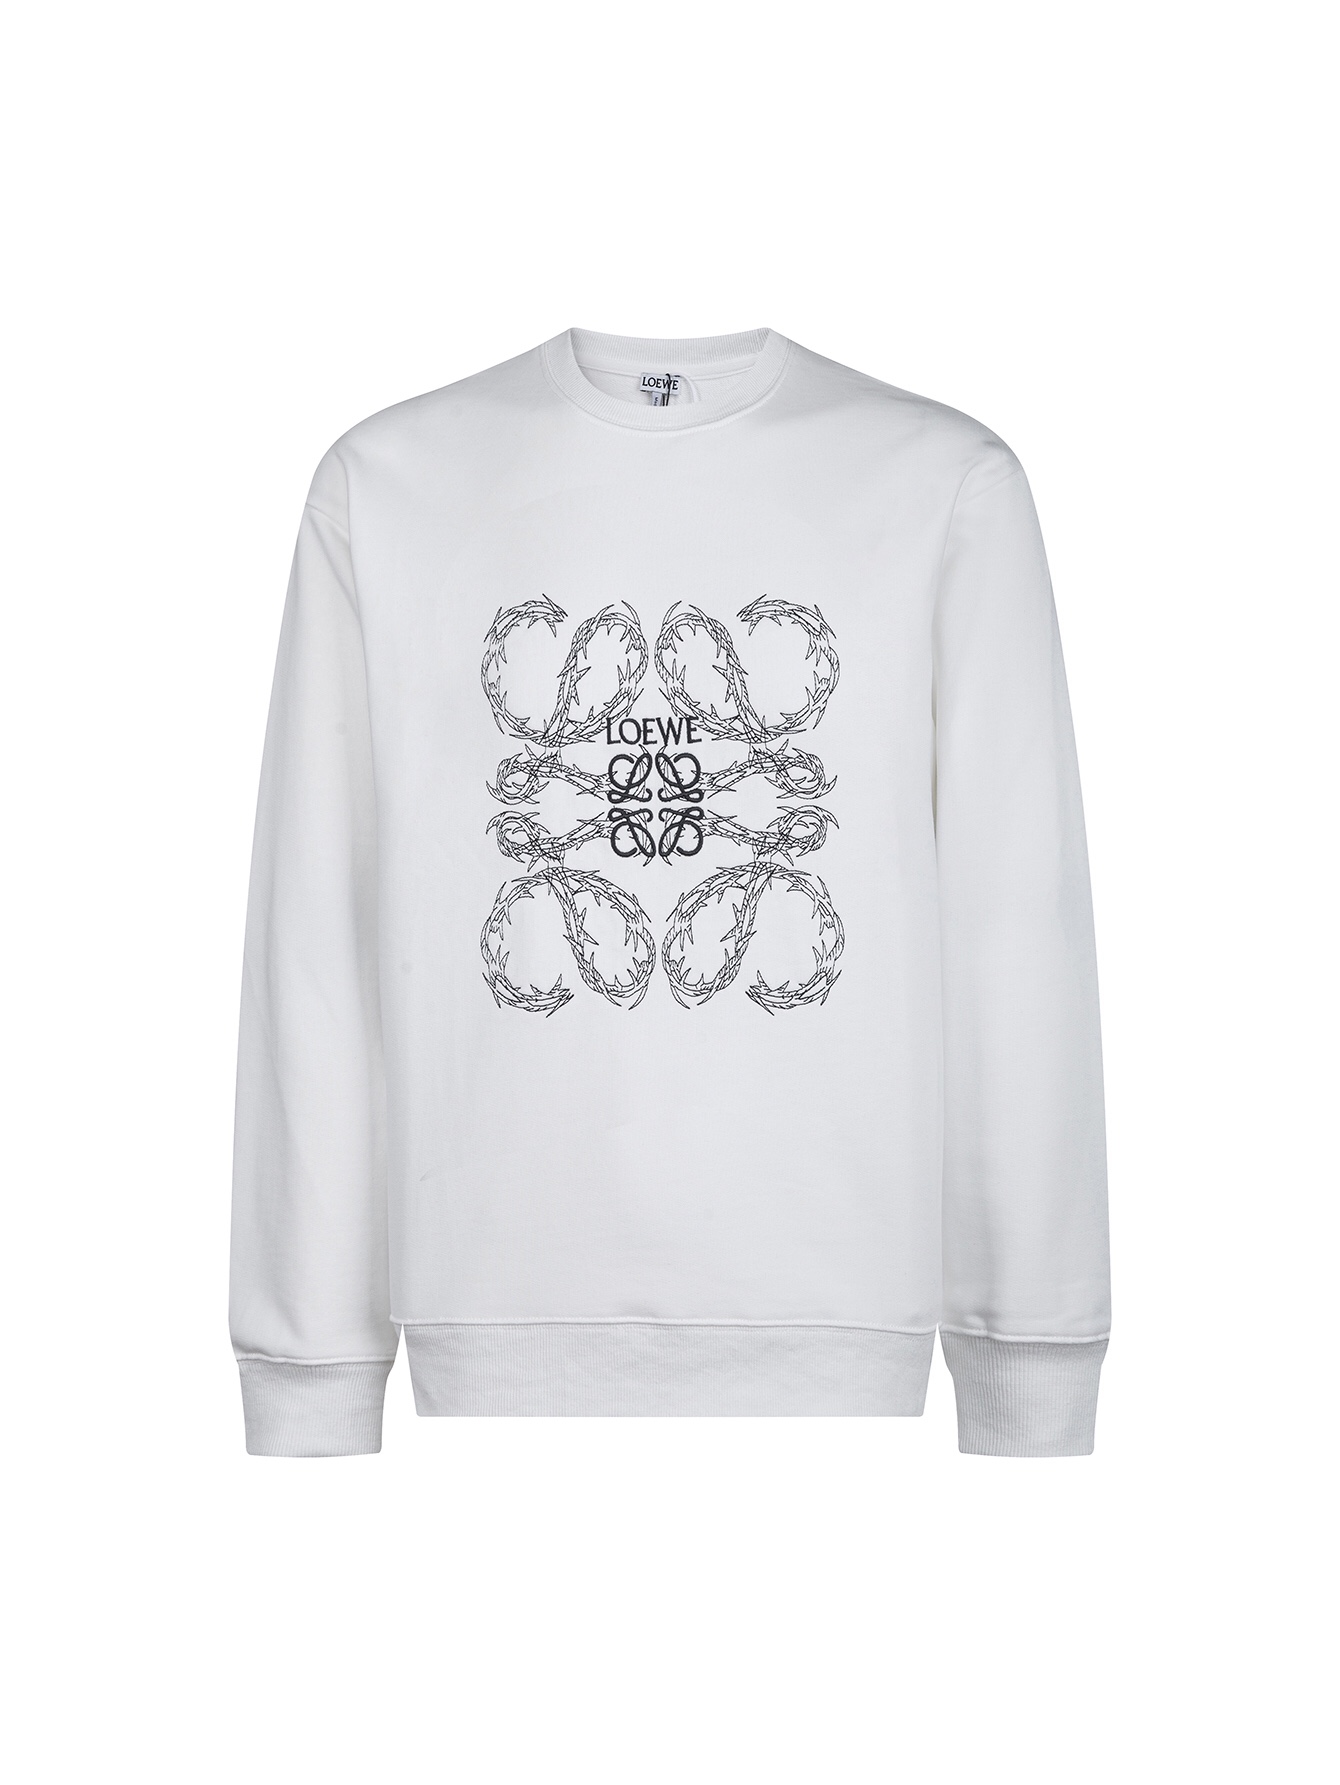 Loewe Clothing Sweatshirts Black White Embroidery Unisex Cotton